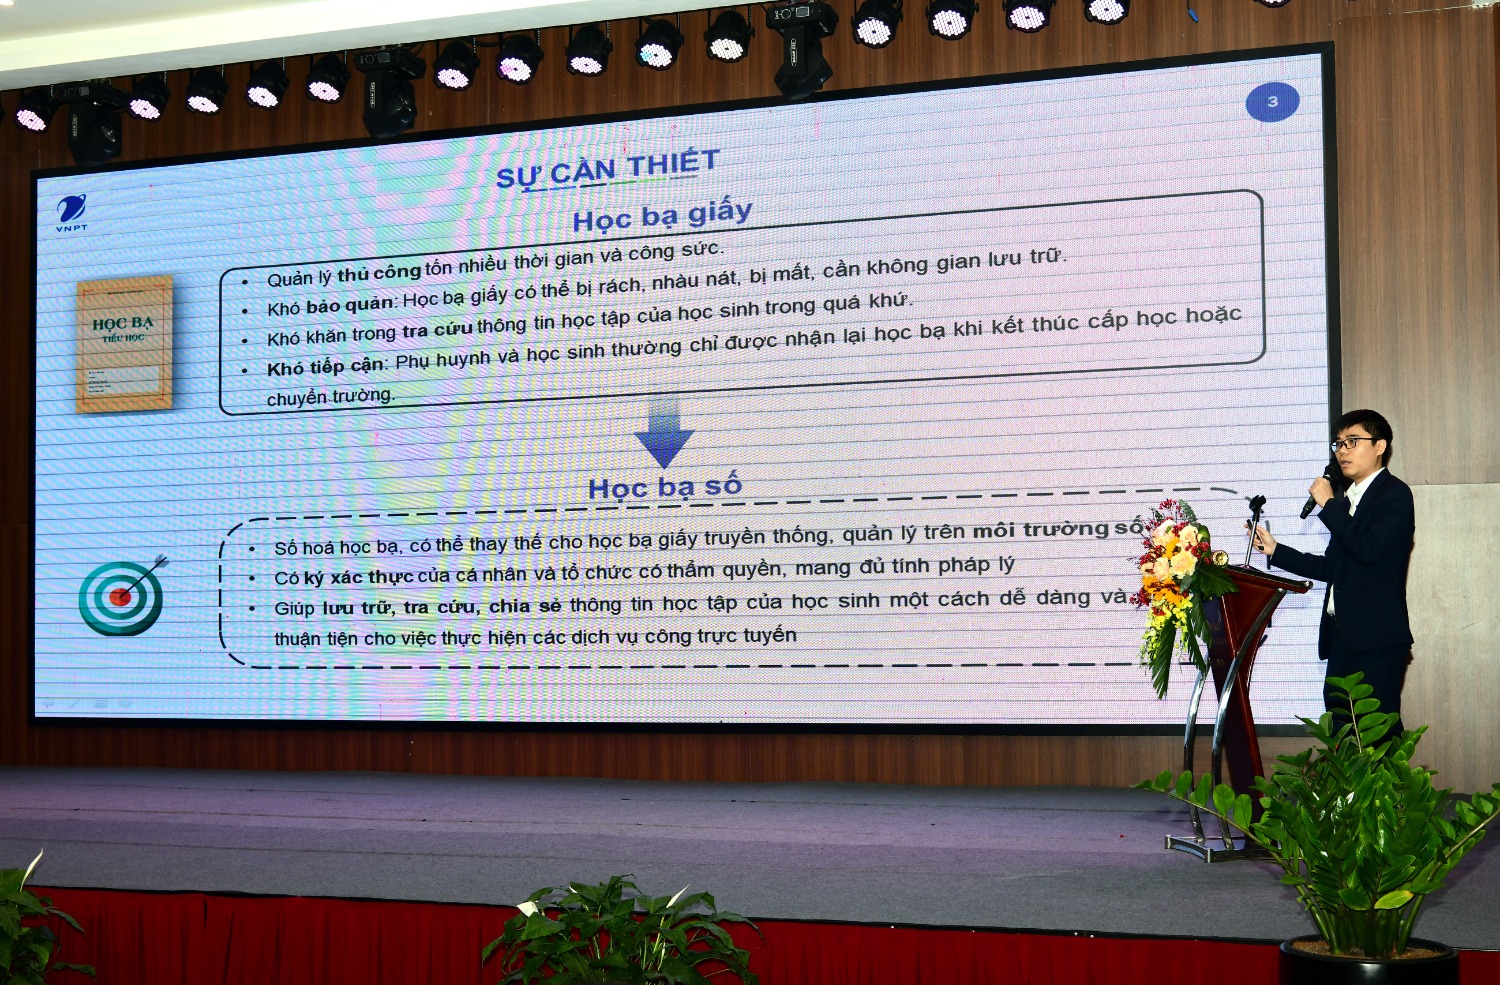 Theo đó, tại Hội nghị triển khai thí điểm Học bạ số do Bộ  GD&ĐT tổ chức tại Lạng Sơn, với sự tham gia của các Vụ chuyên môn thuộc Bộ và đại diện 63 Sở GD&ĐT trong cả nước.